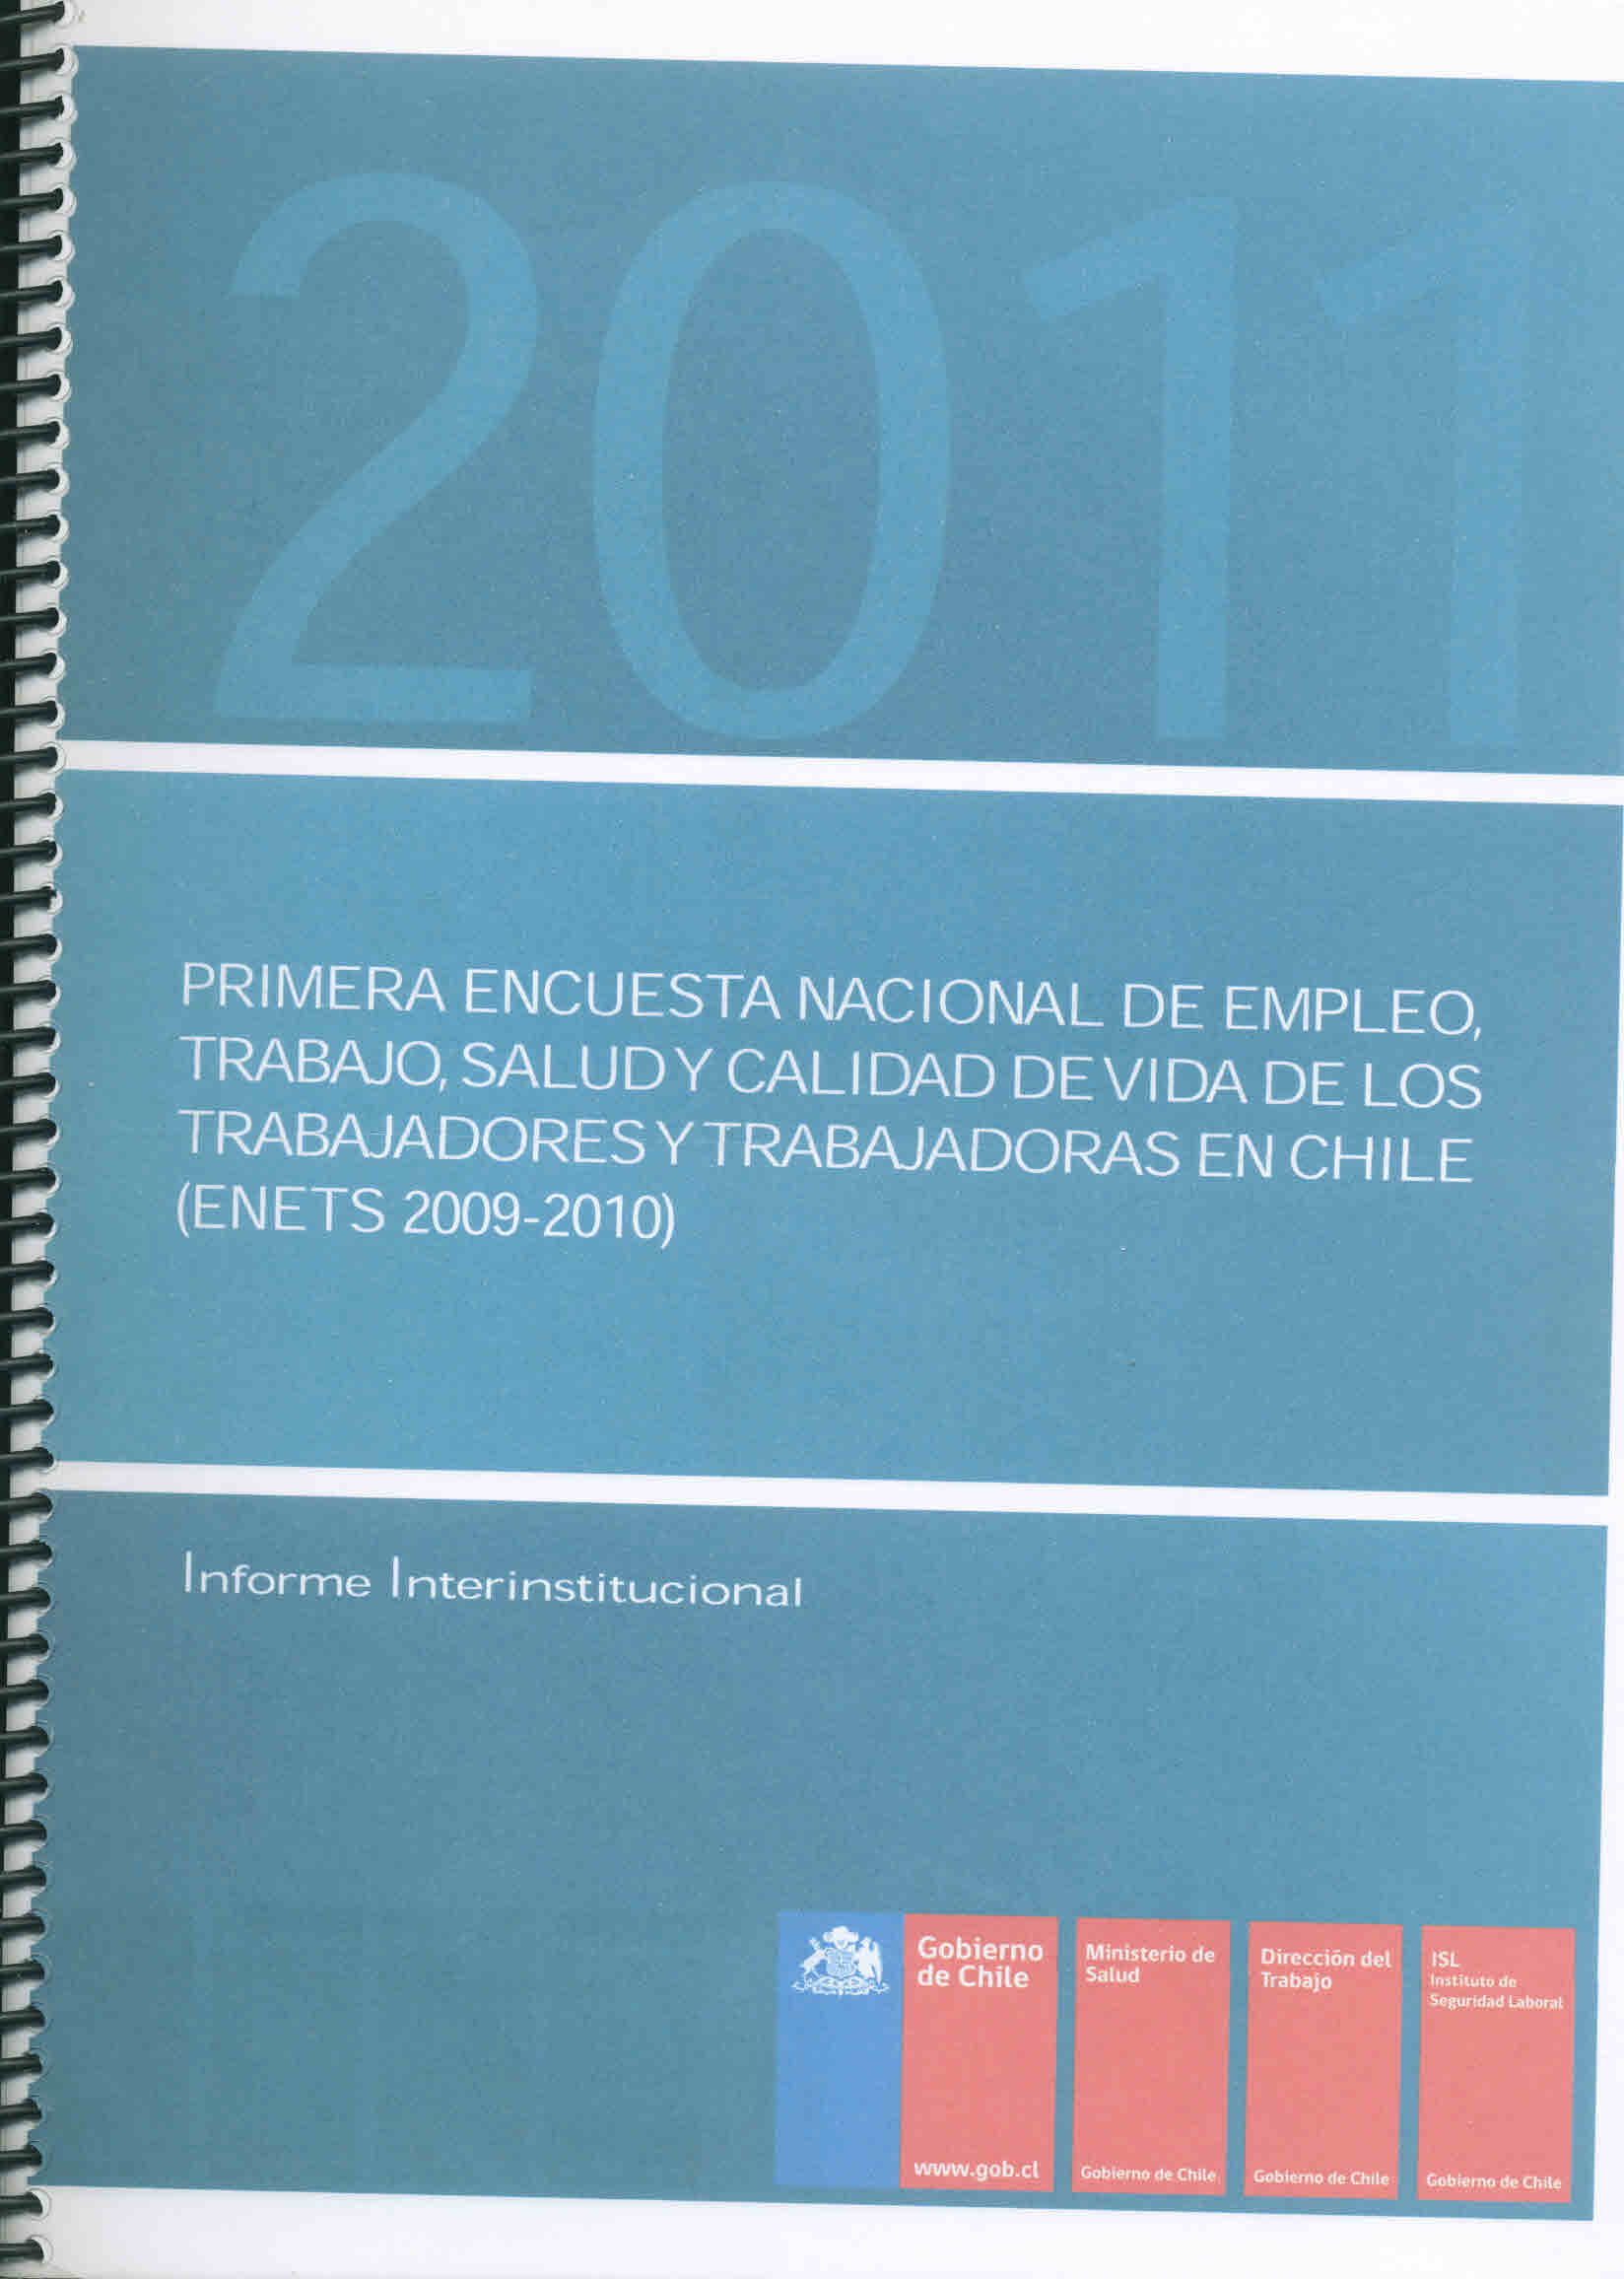 Primera encuesta nacional de empleo, trabajo, salud y calidad de vida de los trabajadores y trabajadoras en Chile (Enets 2009-2012). Informe interinstitucional